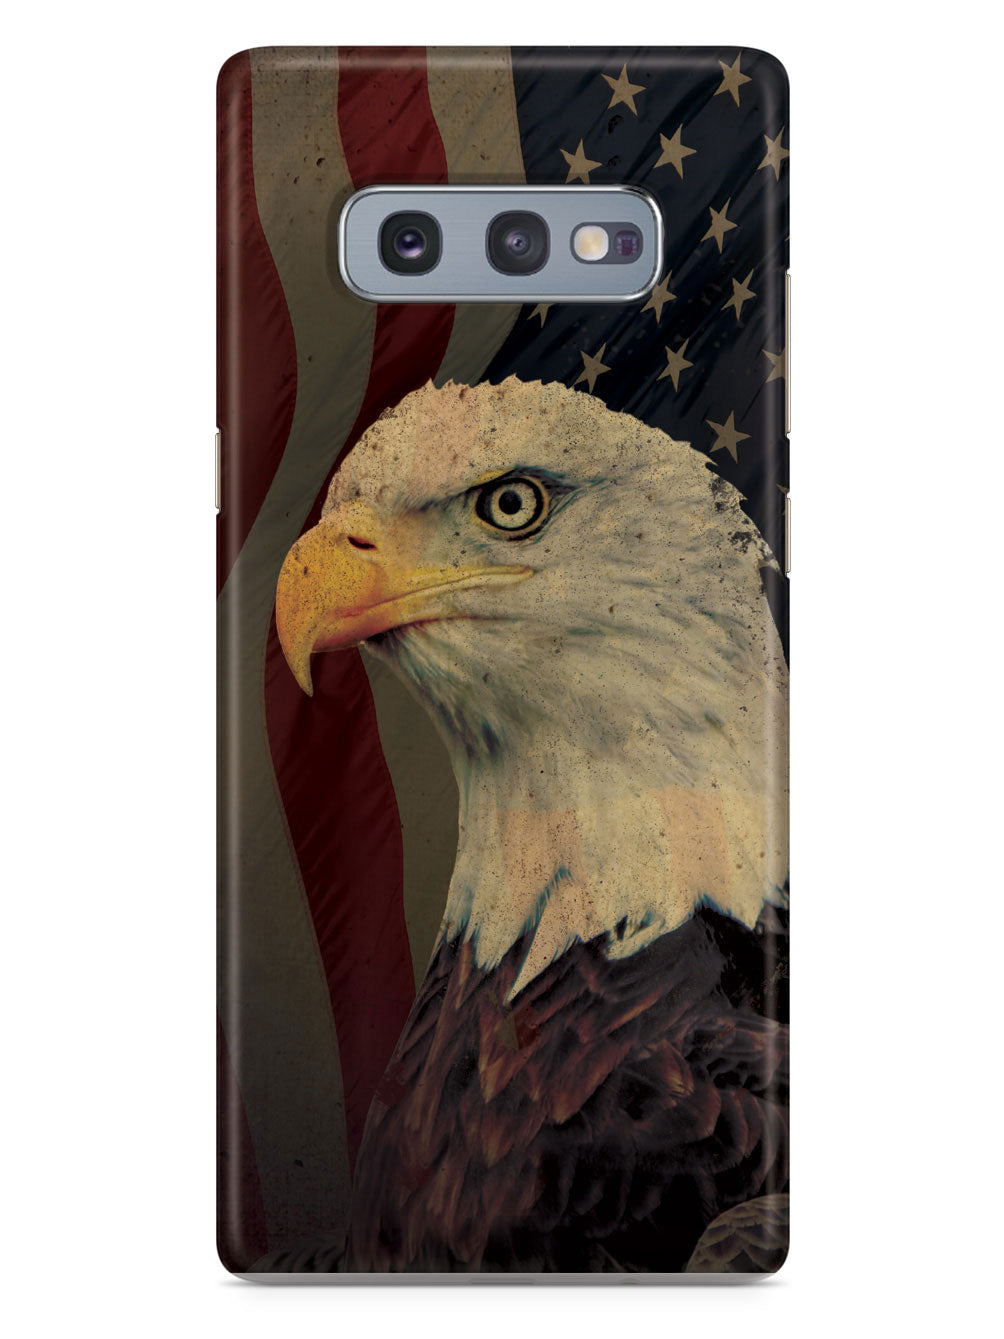 American Eagle - Patriotic Case